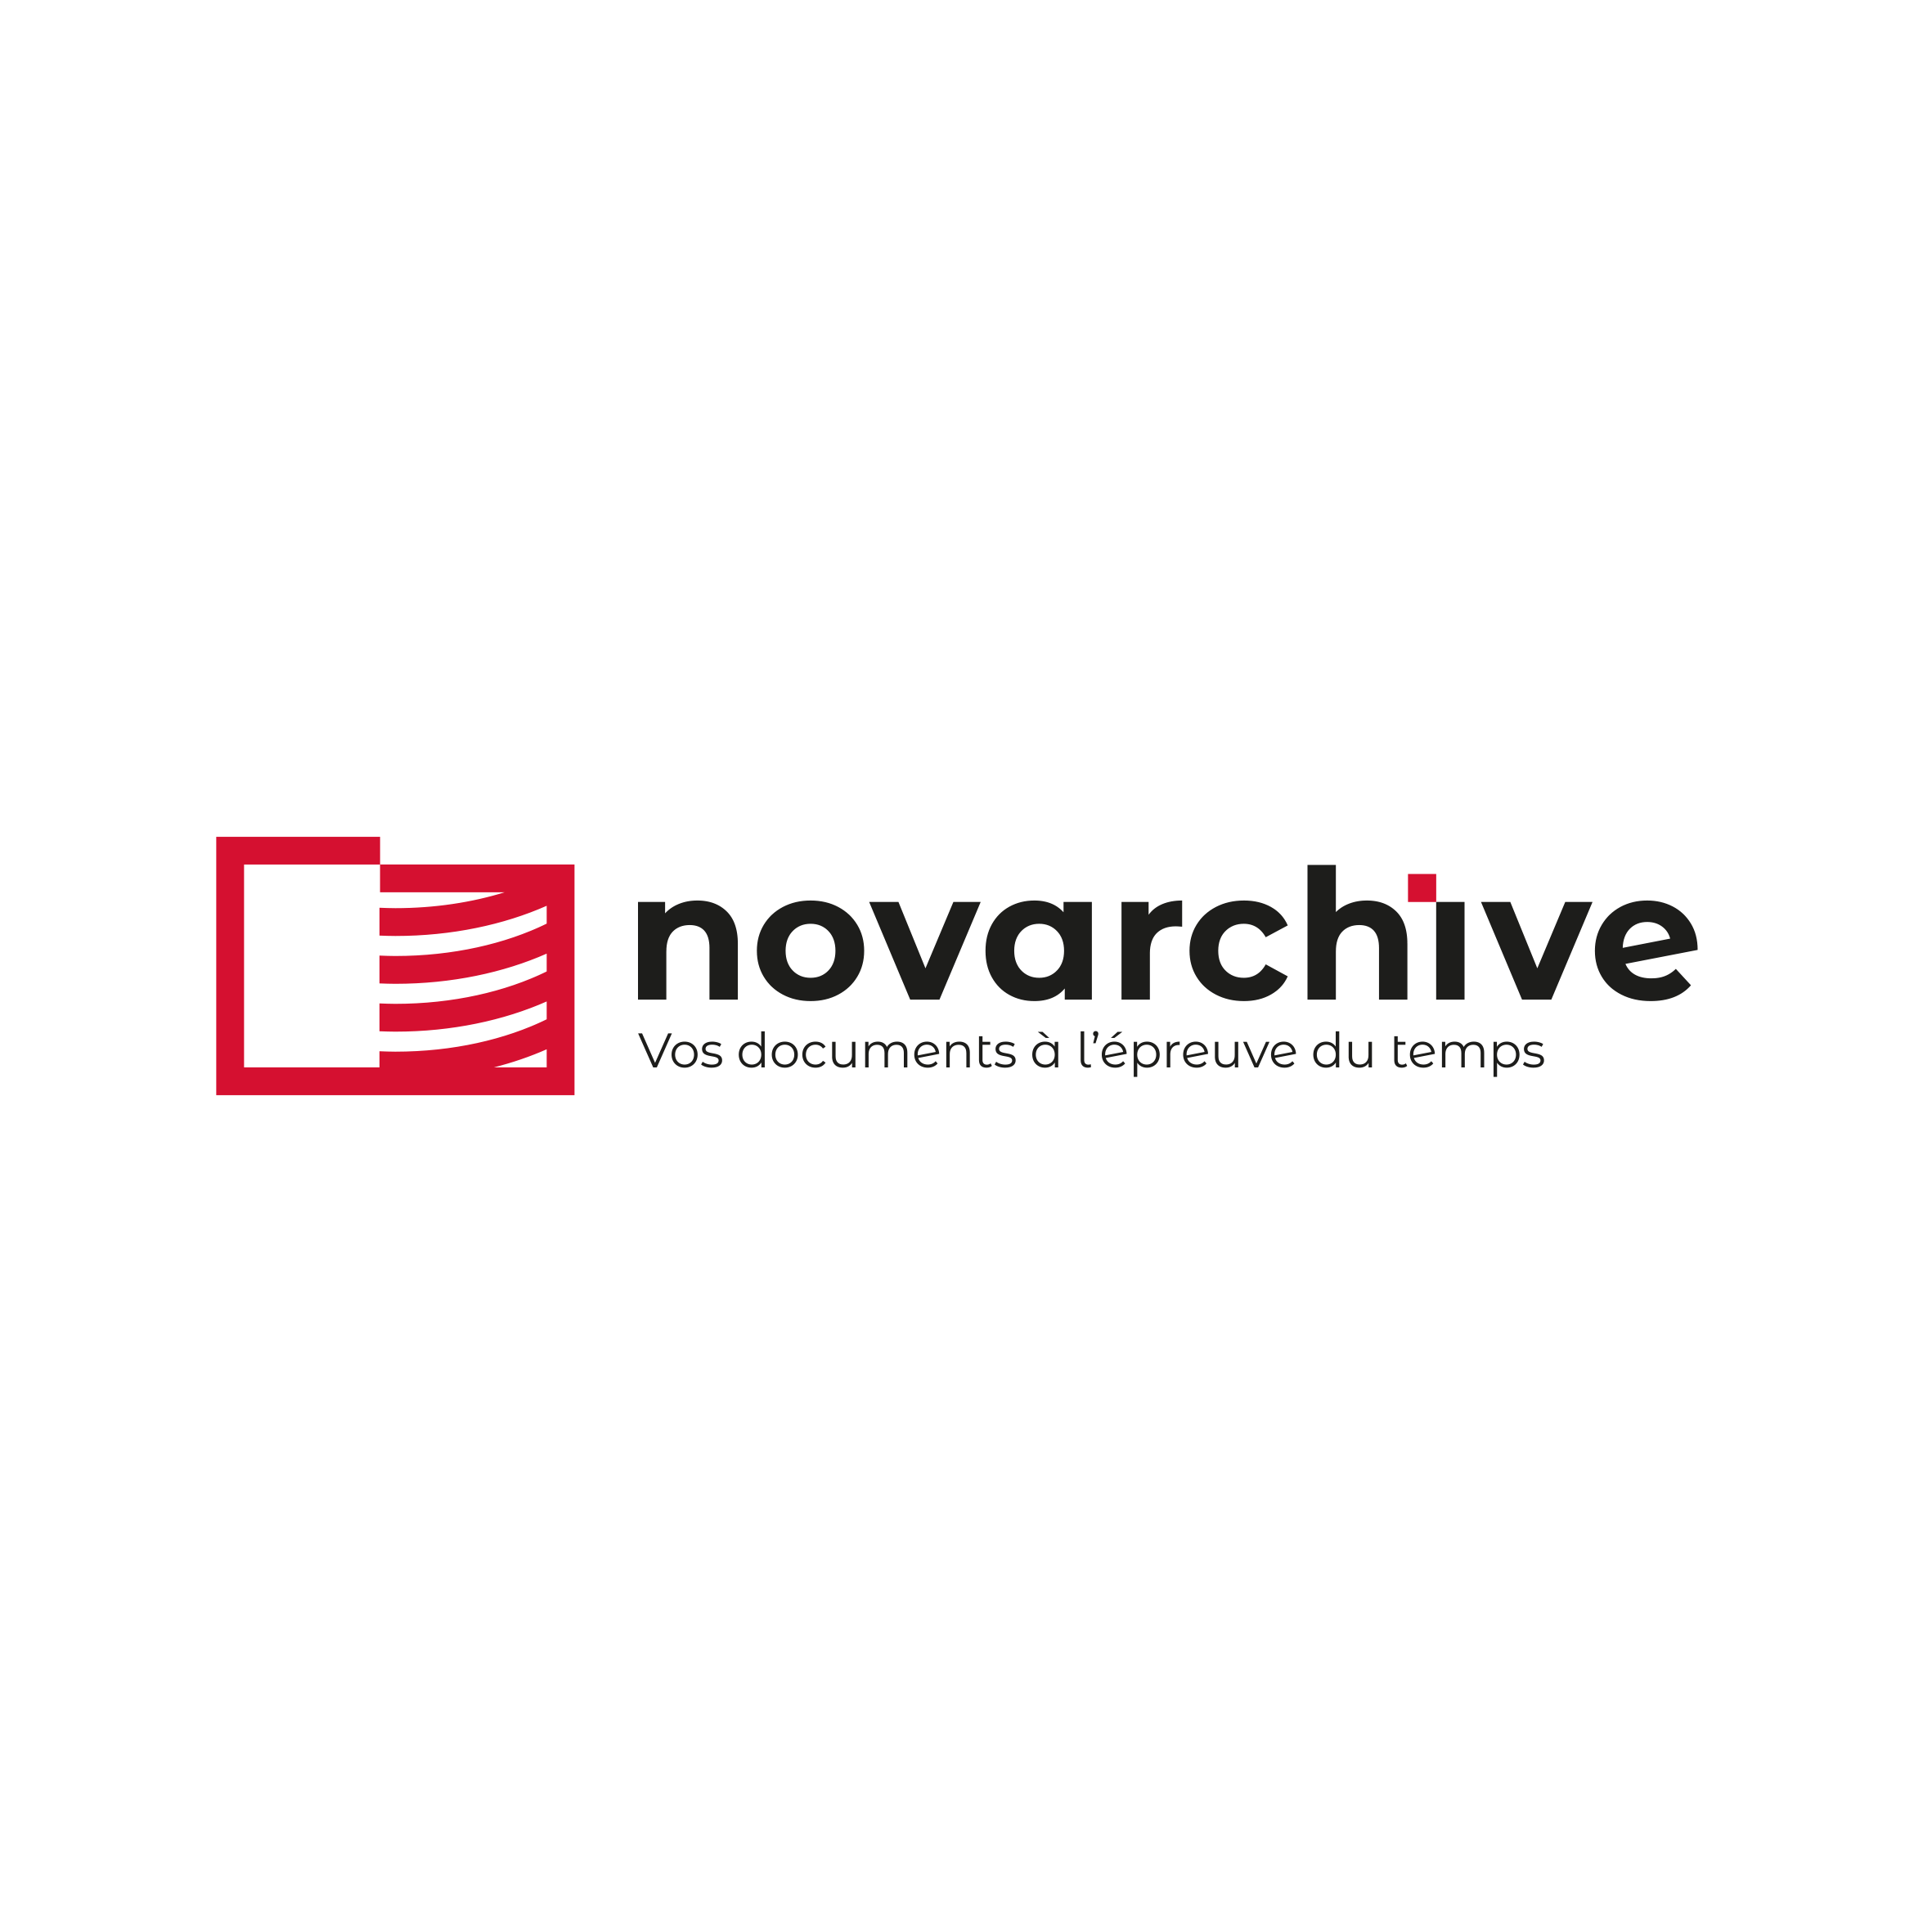 Novarchive_logo